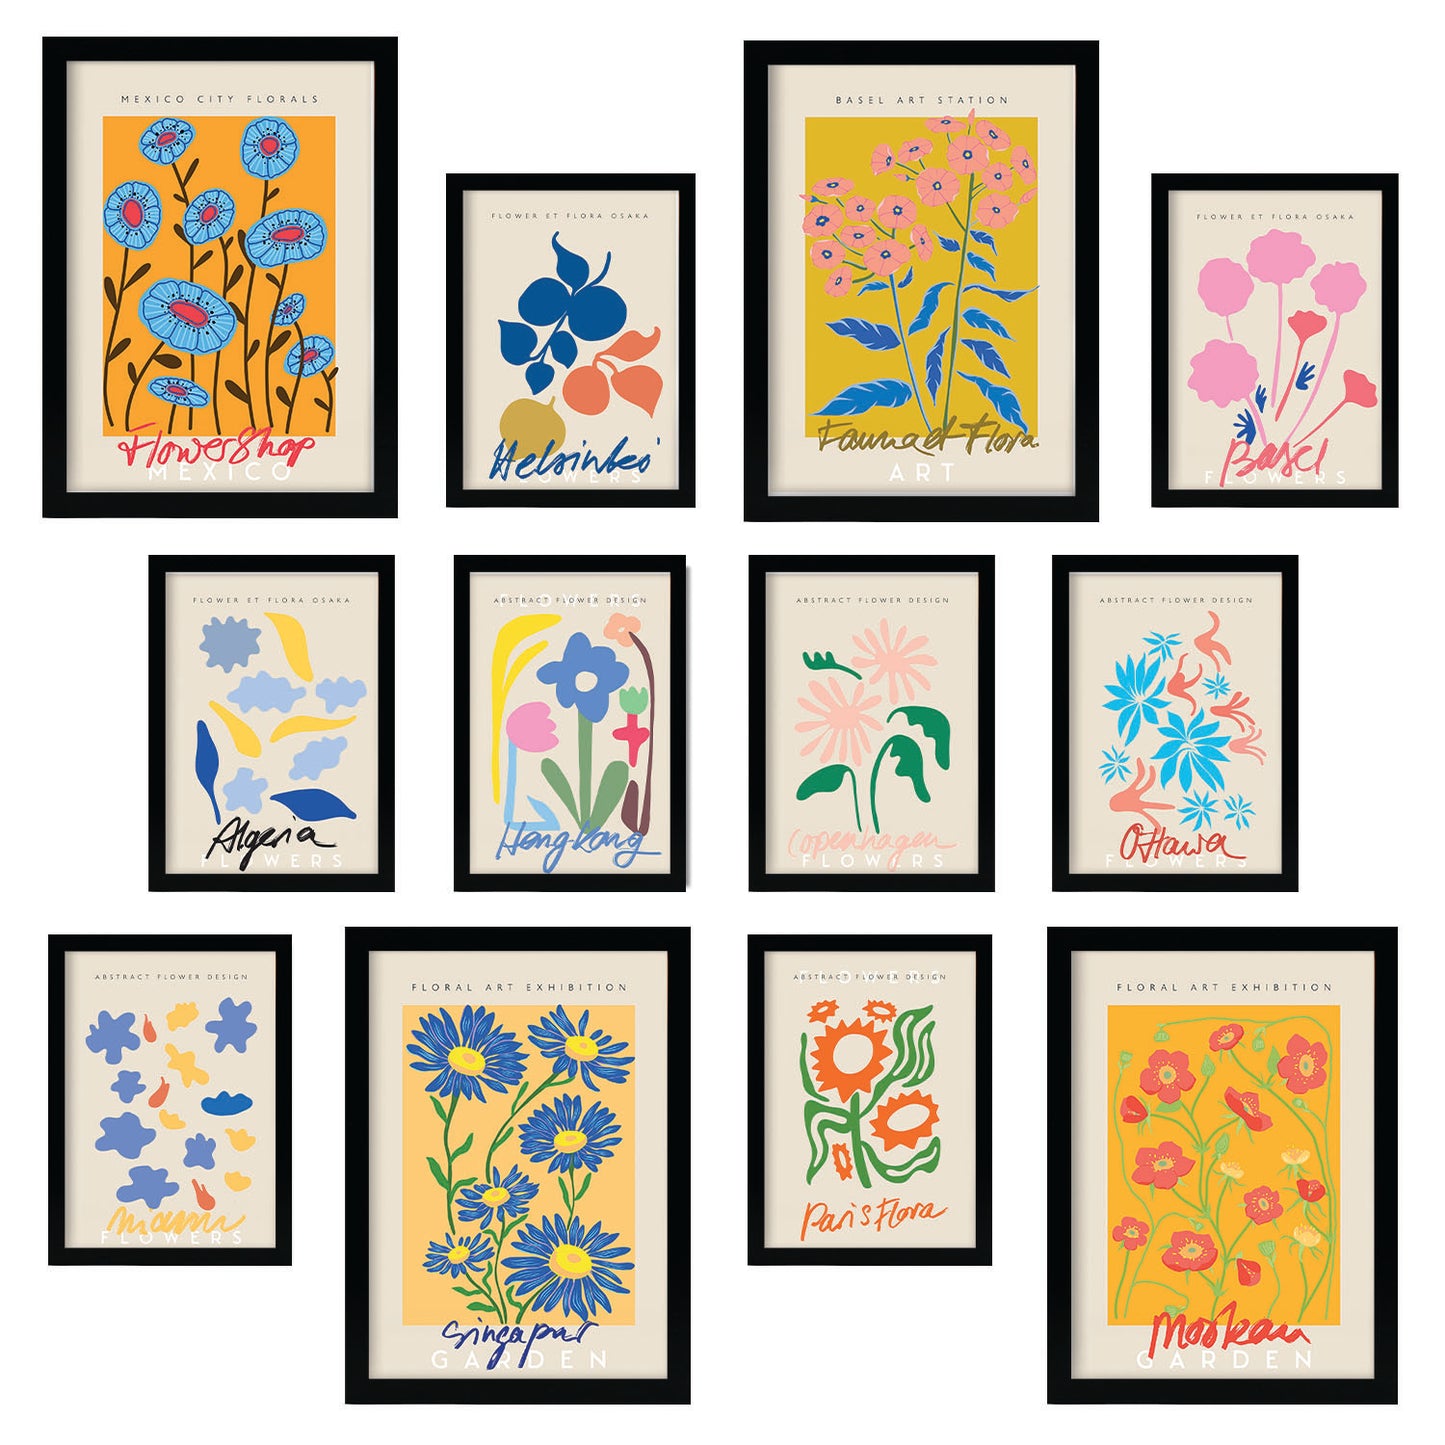 Conjunto de Láminas Botánicas Coloridas